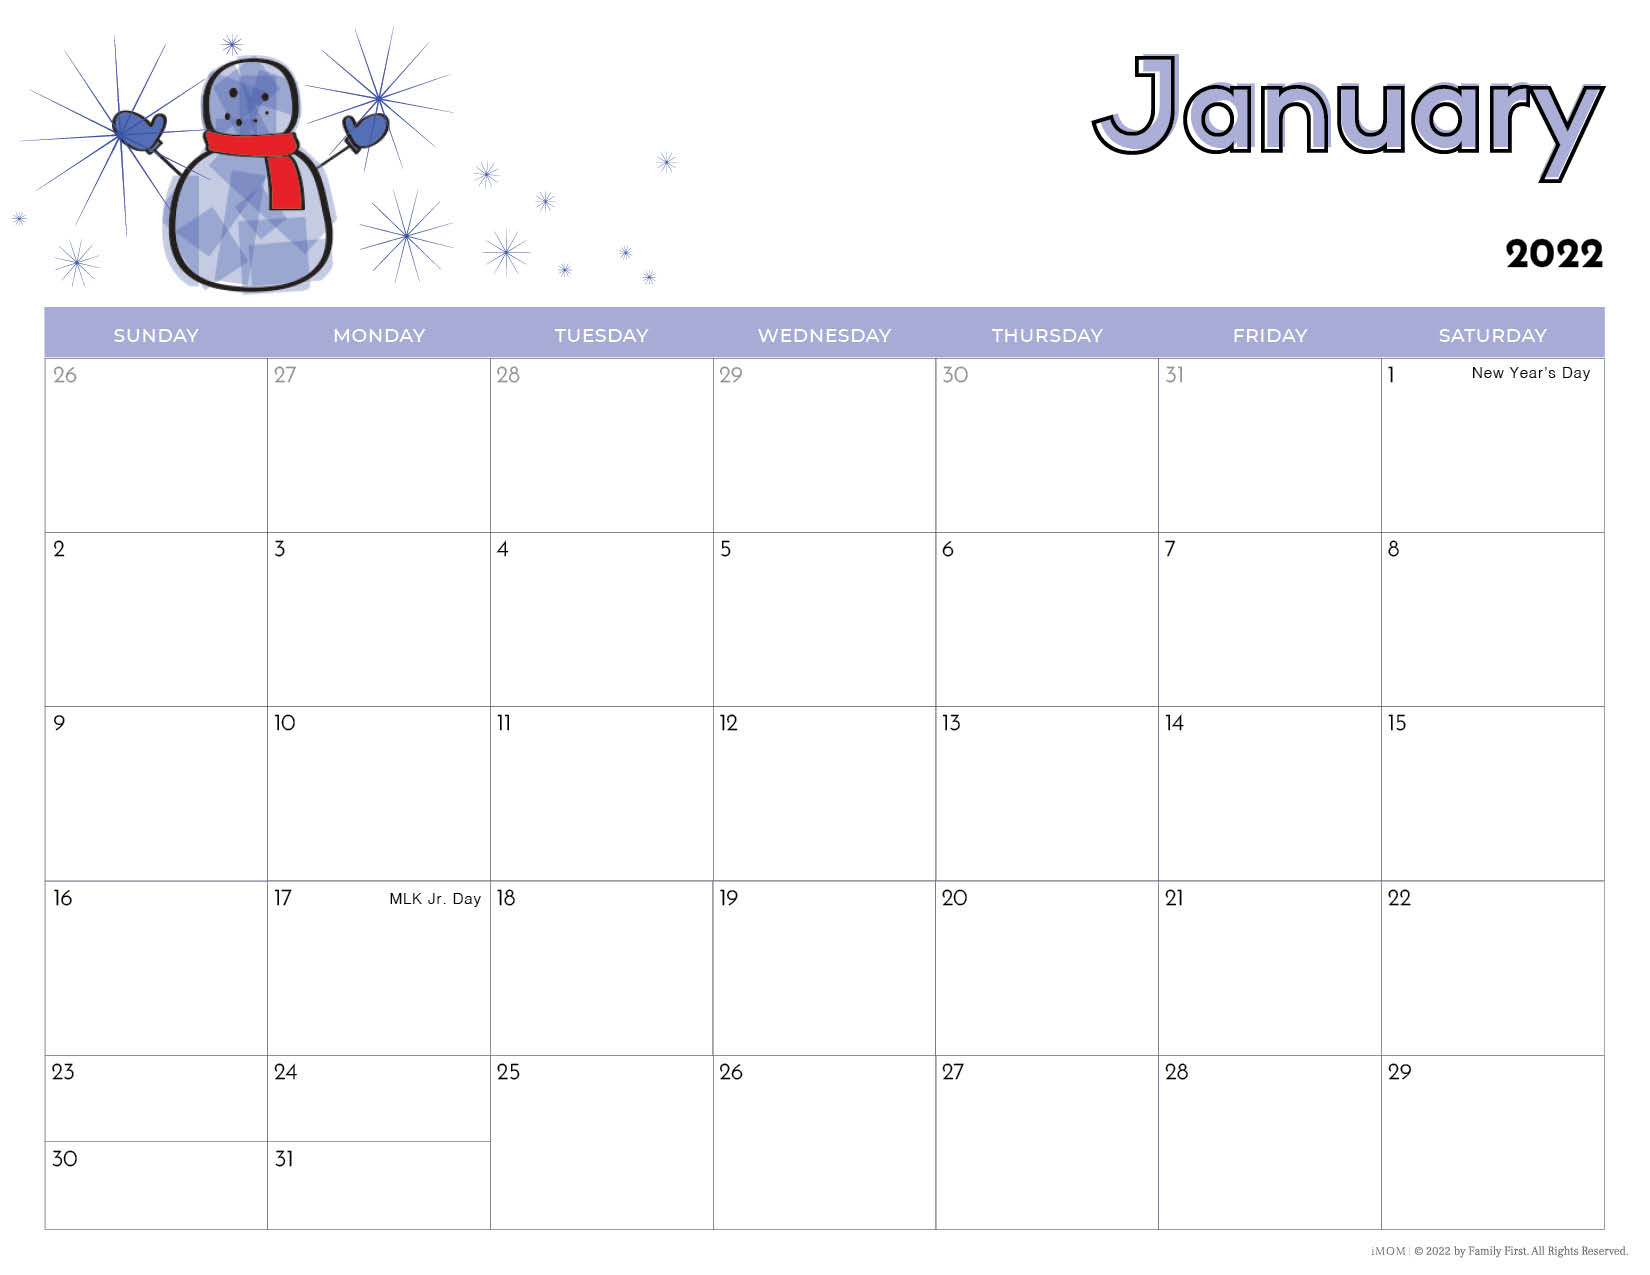 22 Printable Calendars for Kids - iMOM Inside Blank Calendar Template For Kids